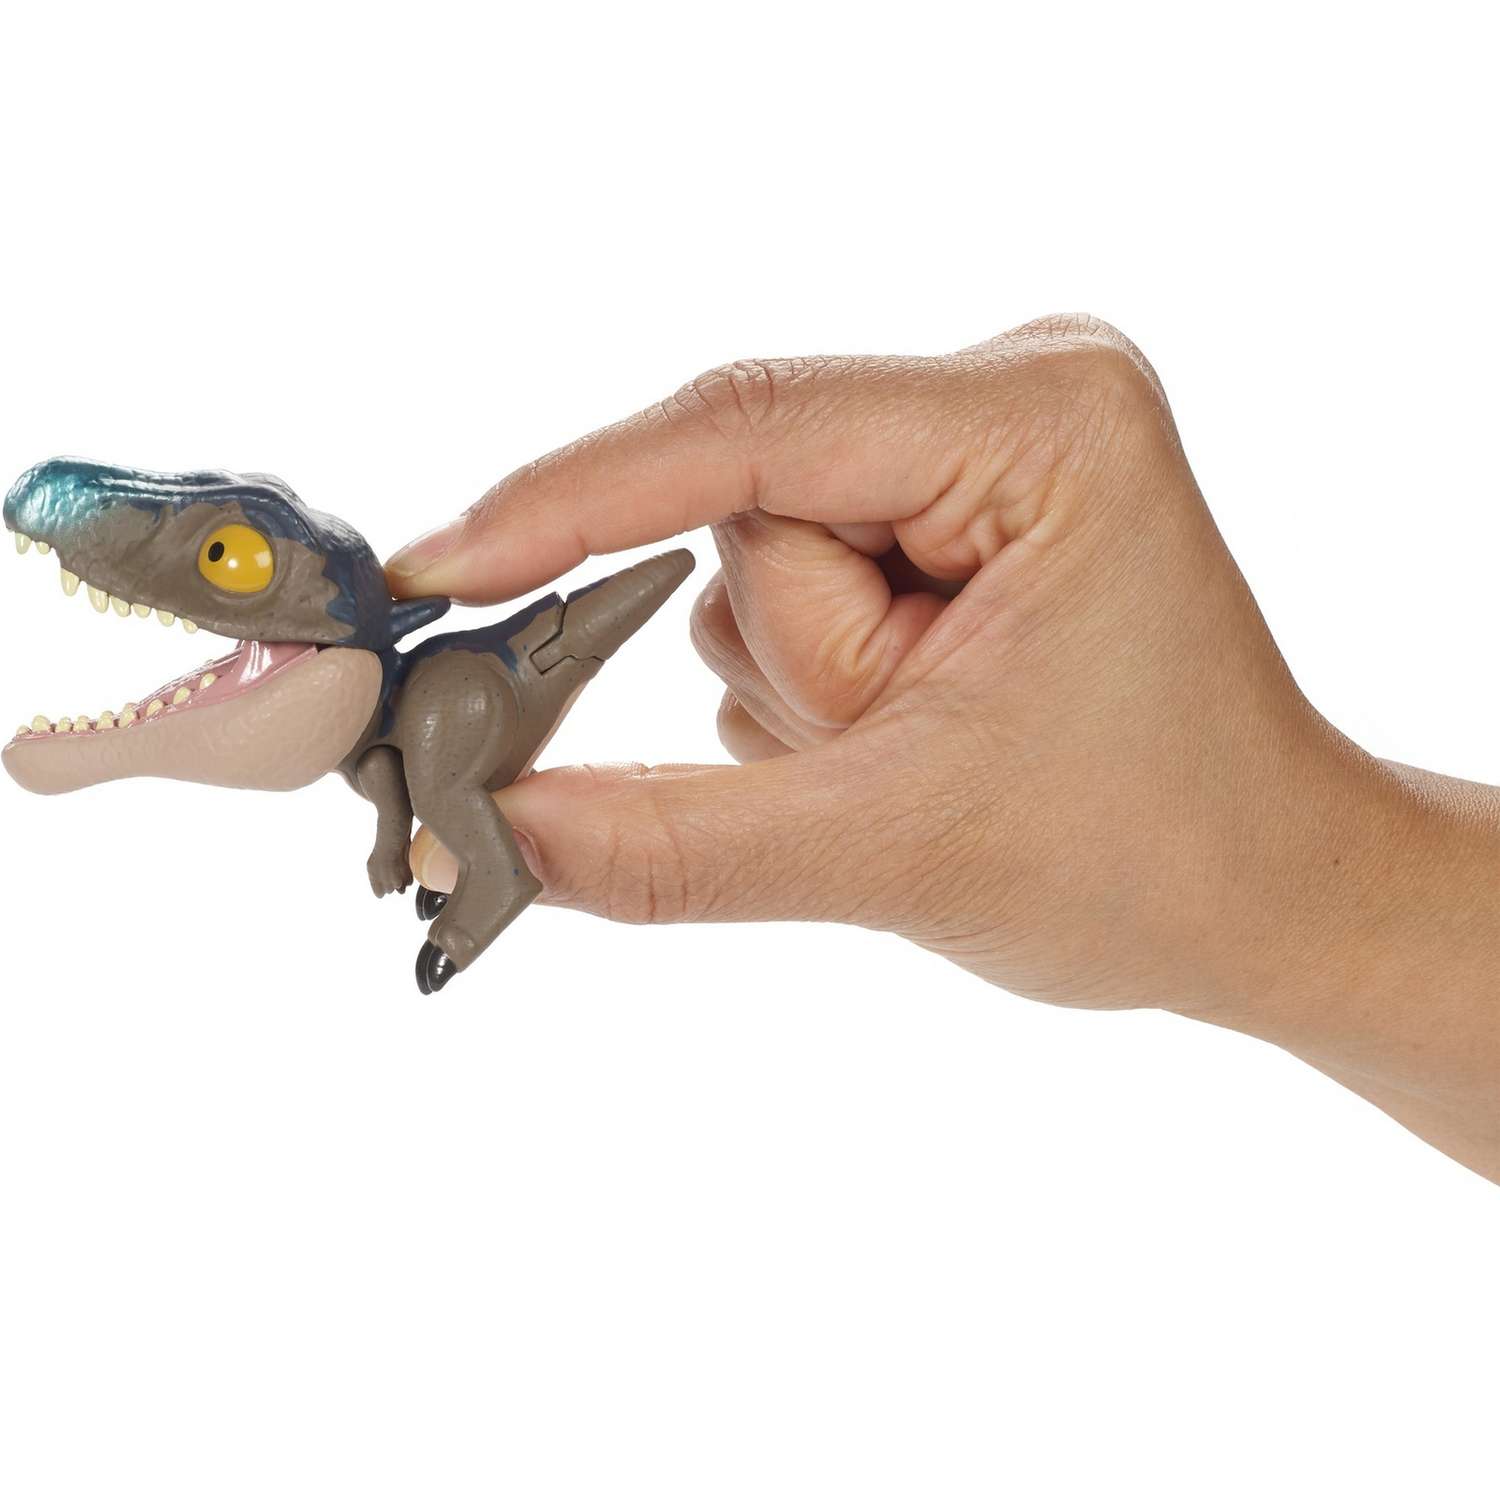 Фигурка Jurassic World Цепляющийся мини-динозаврик Мозазавр GJR06 - фото 4